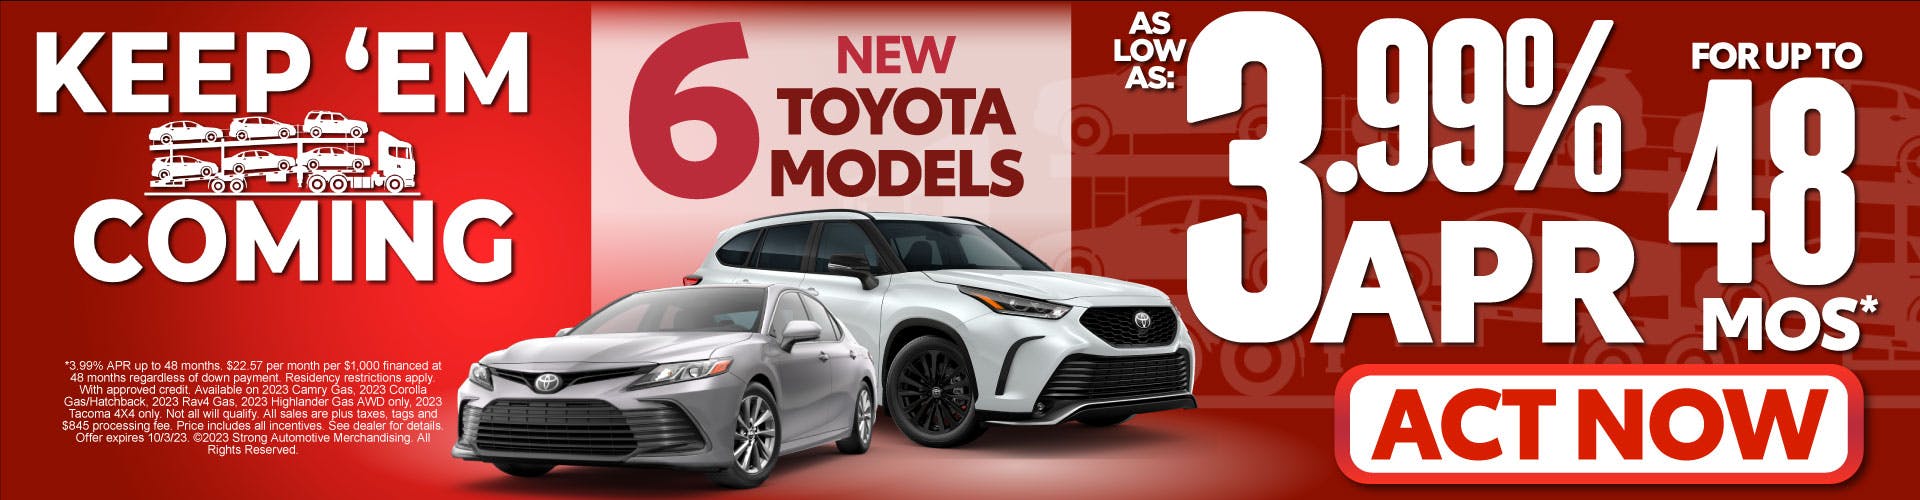 1SAM – 6 New Toyota Models – 3.99% APR